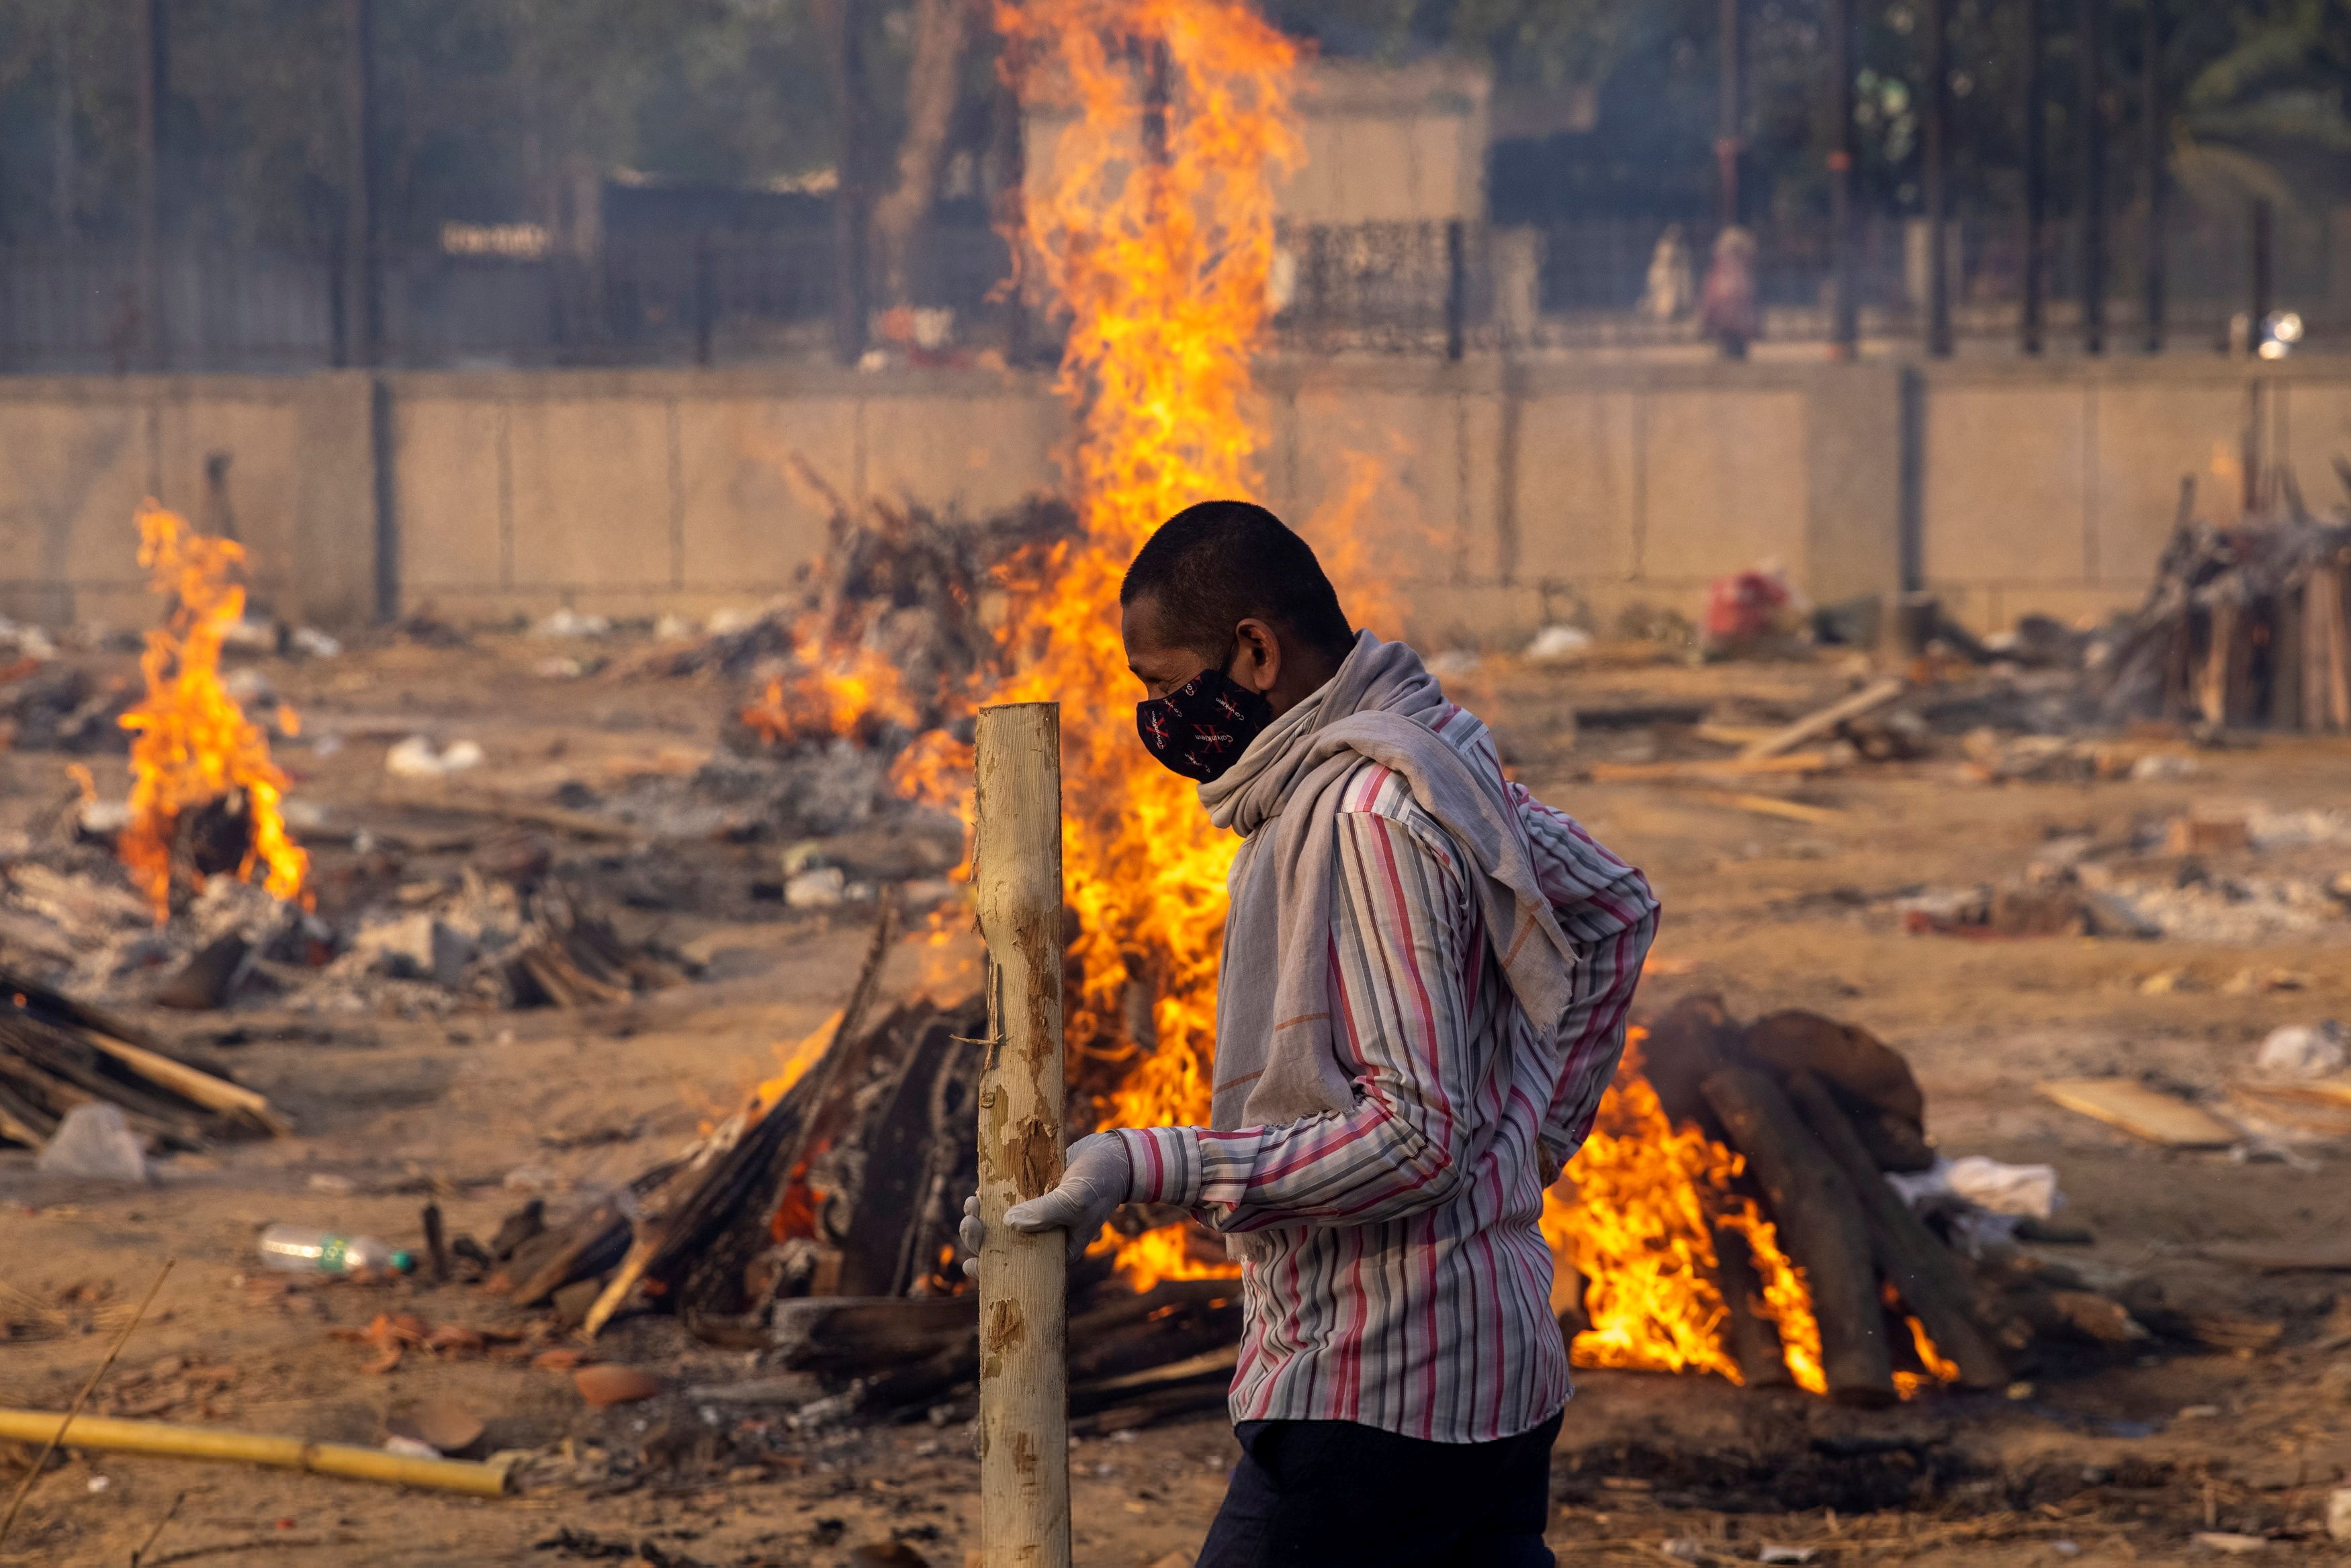 Un hombre pasa junto a piras funerarias en llamas de personas que murieron debido al coronavirus en un crematorio en Nueva Delhi, capital de India (Reuters)